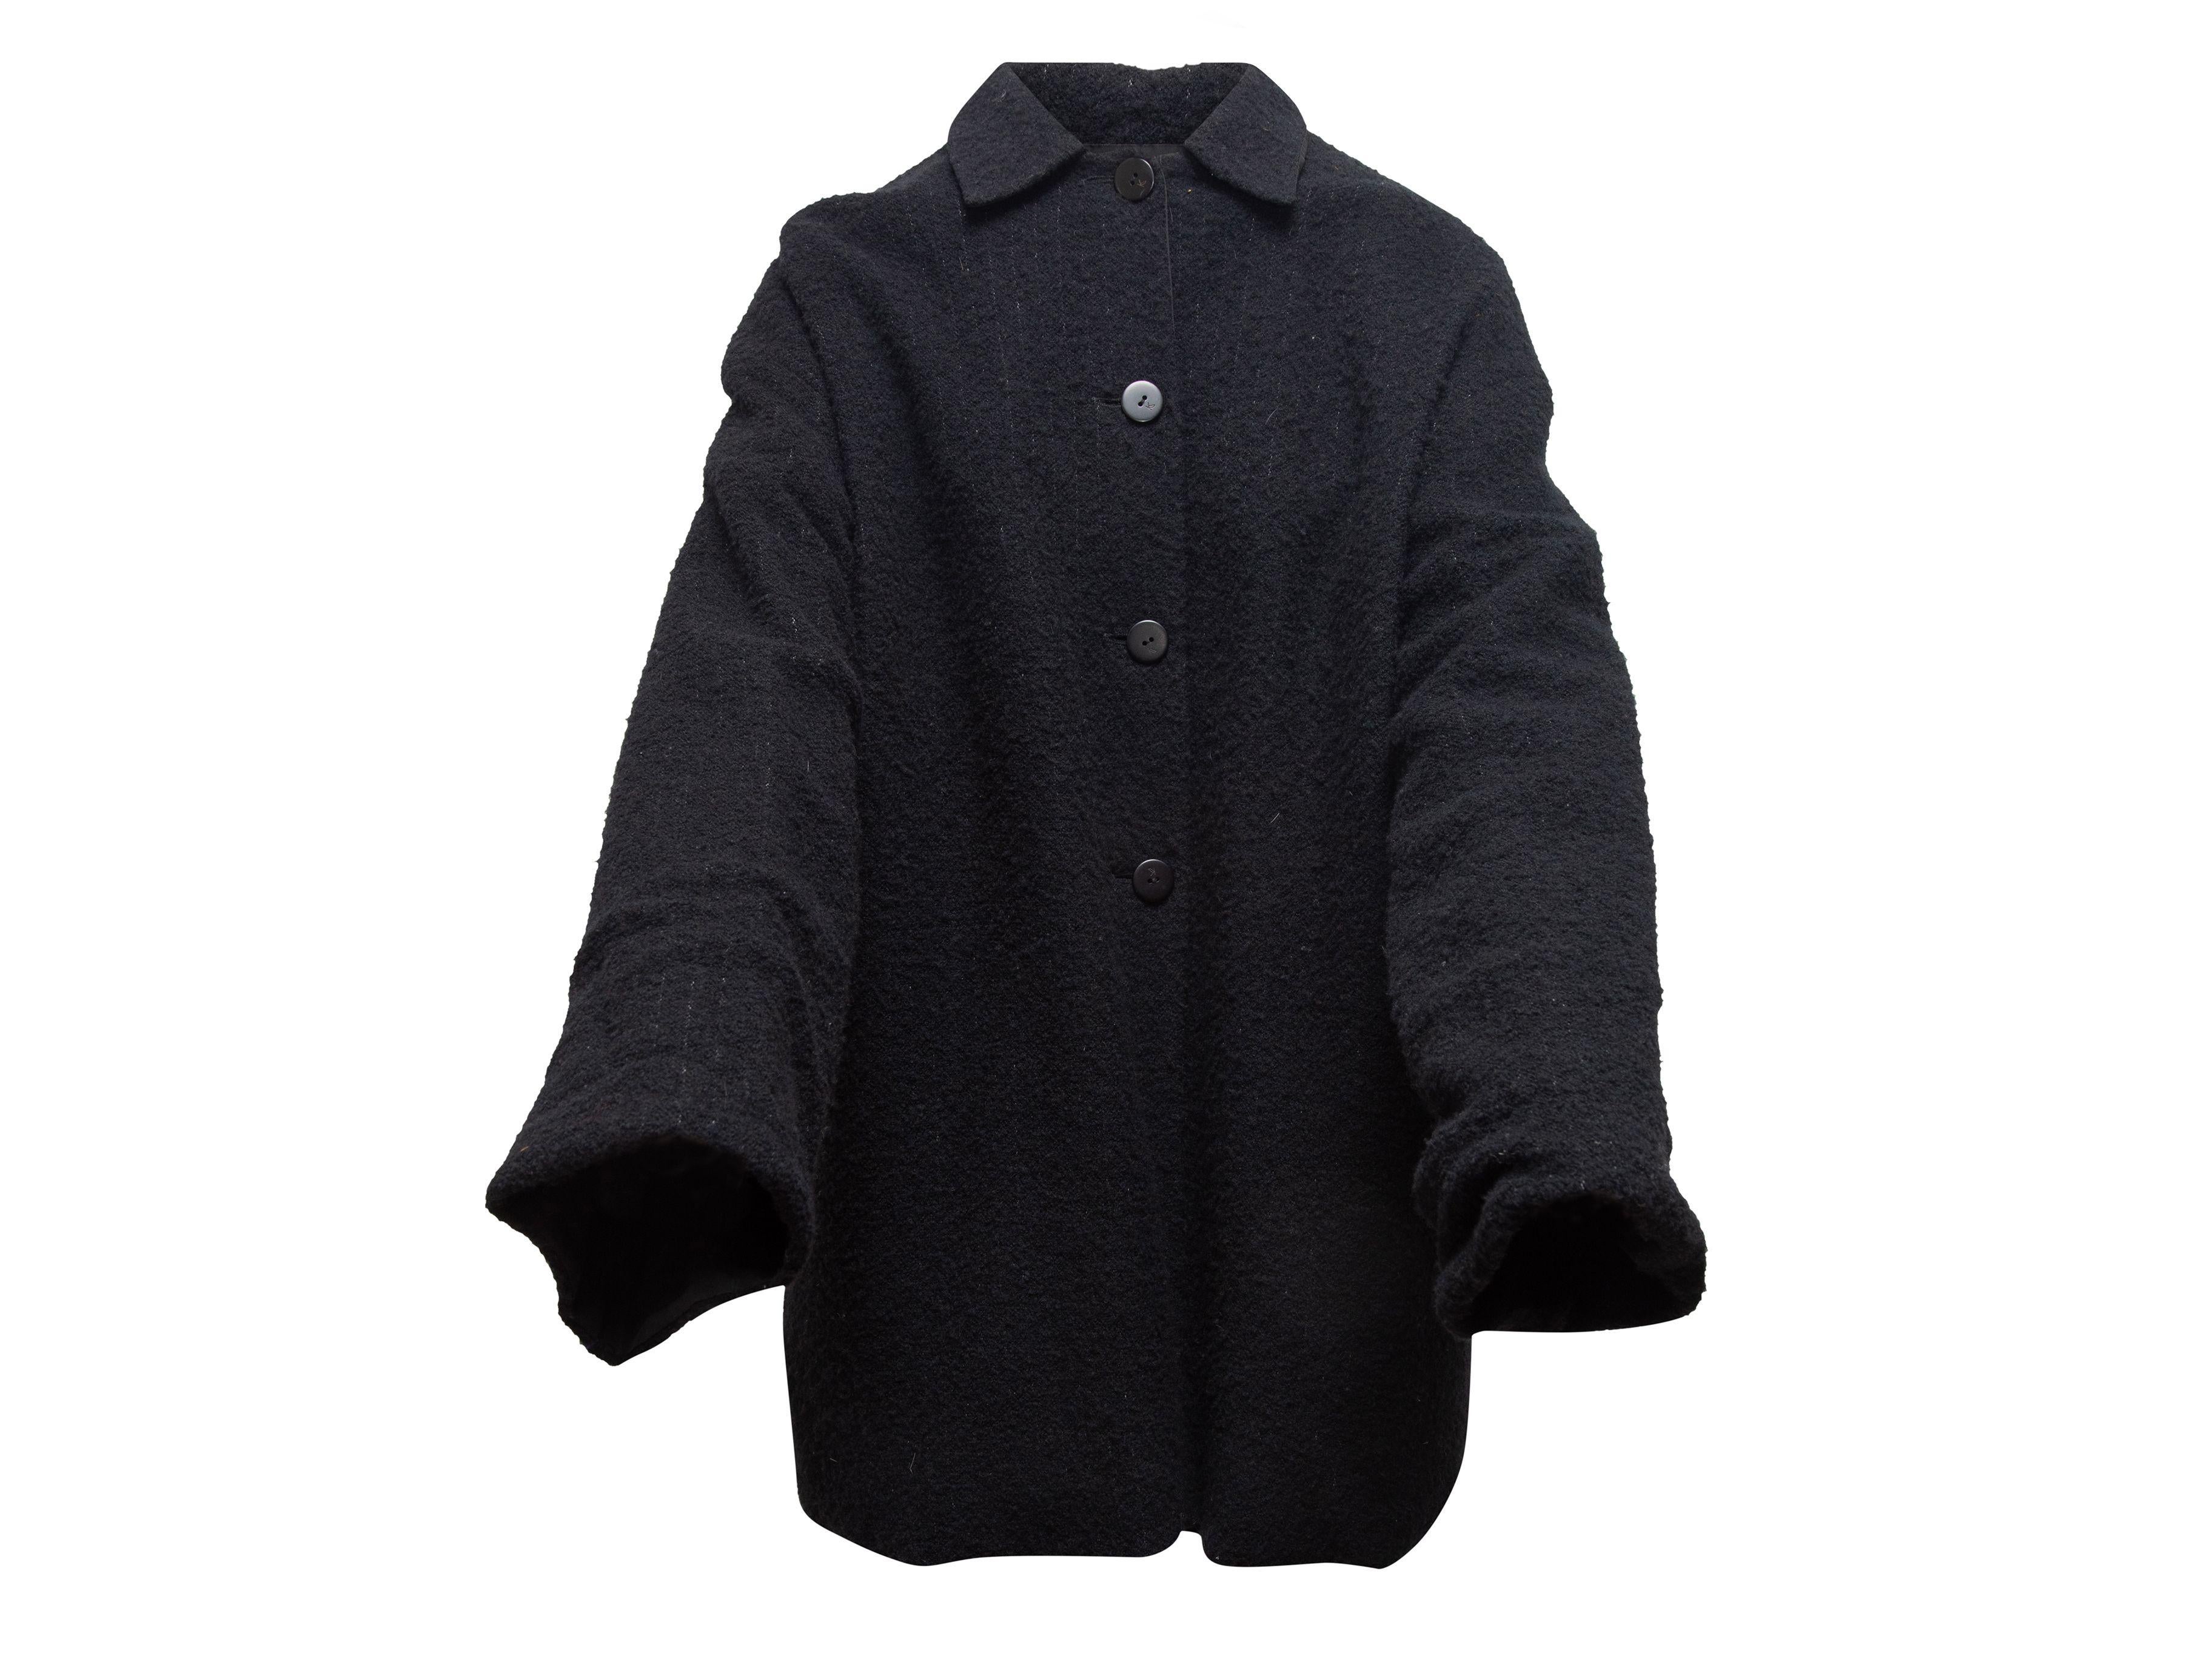 Women's or Men's Krizia Black Wool Boucle Jacket